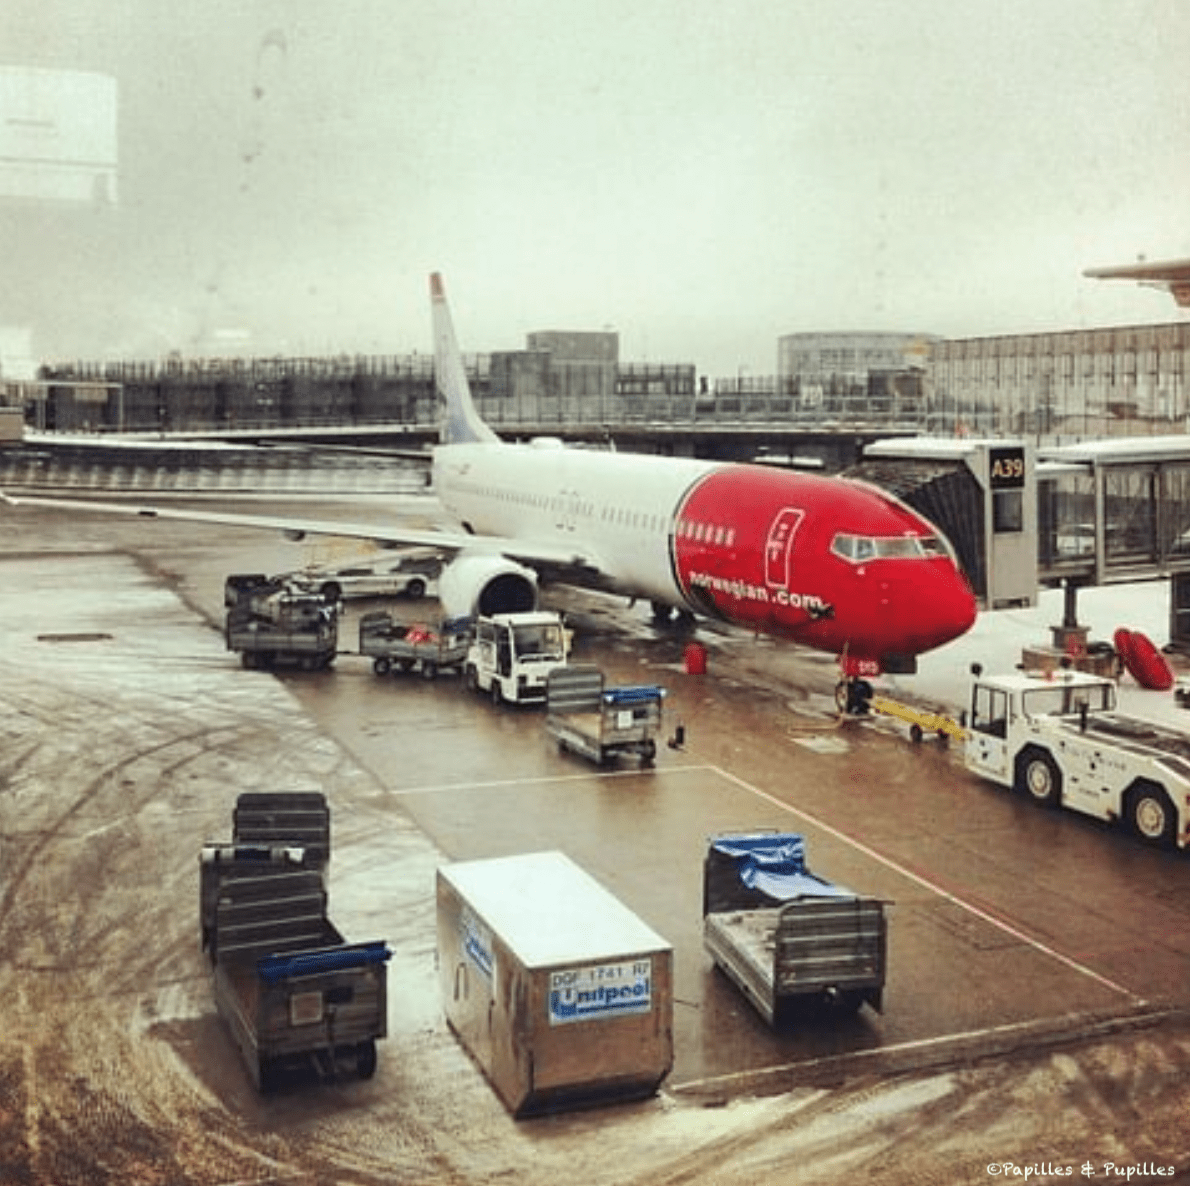 Leaving Oslo